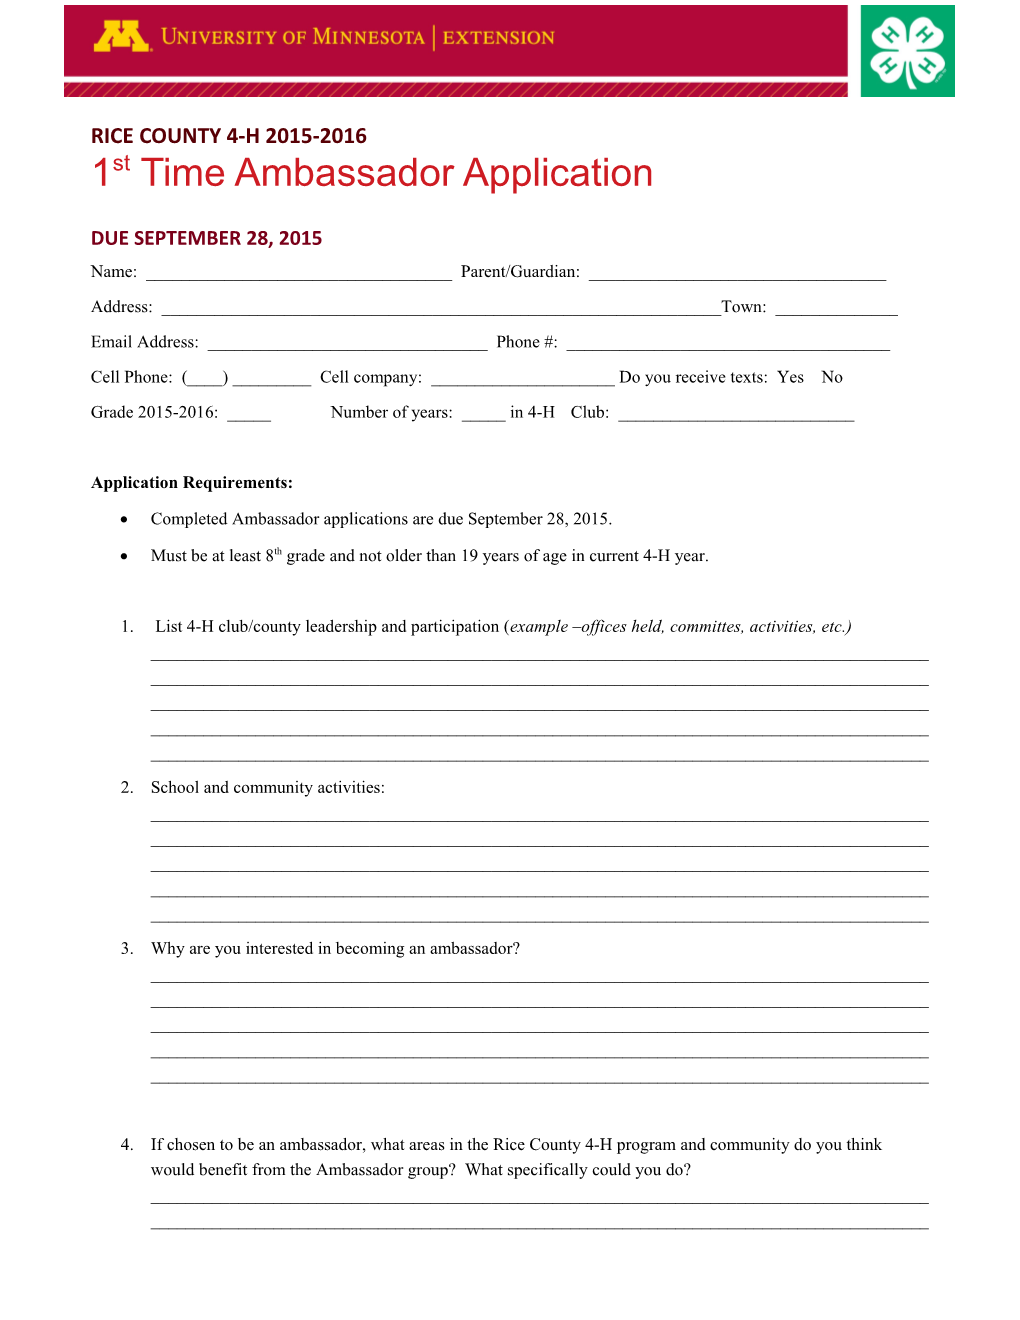 1St Time Ambassador Application